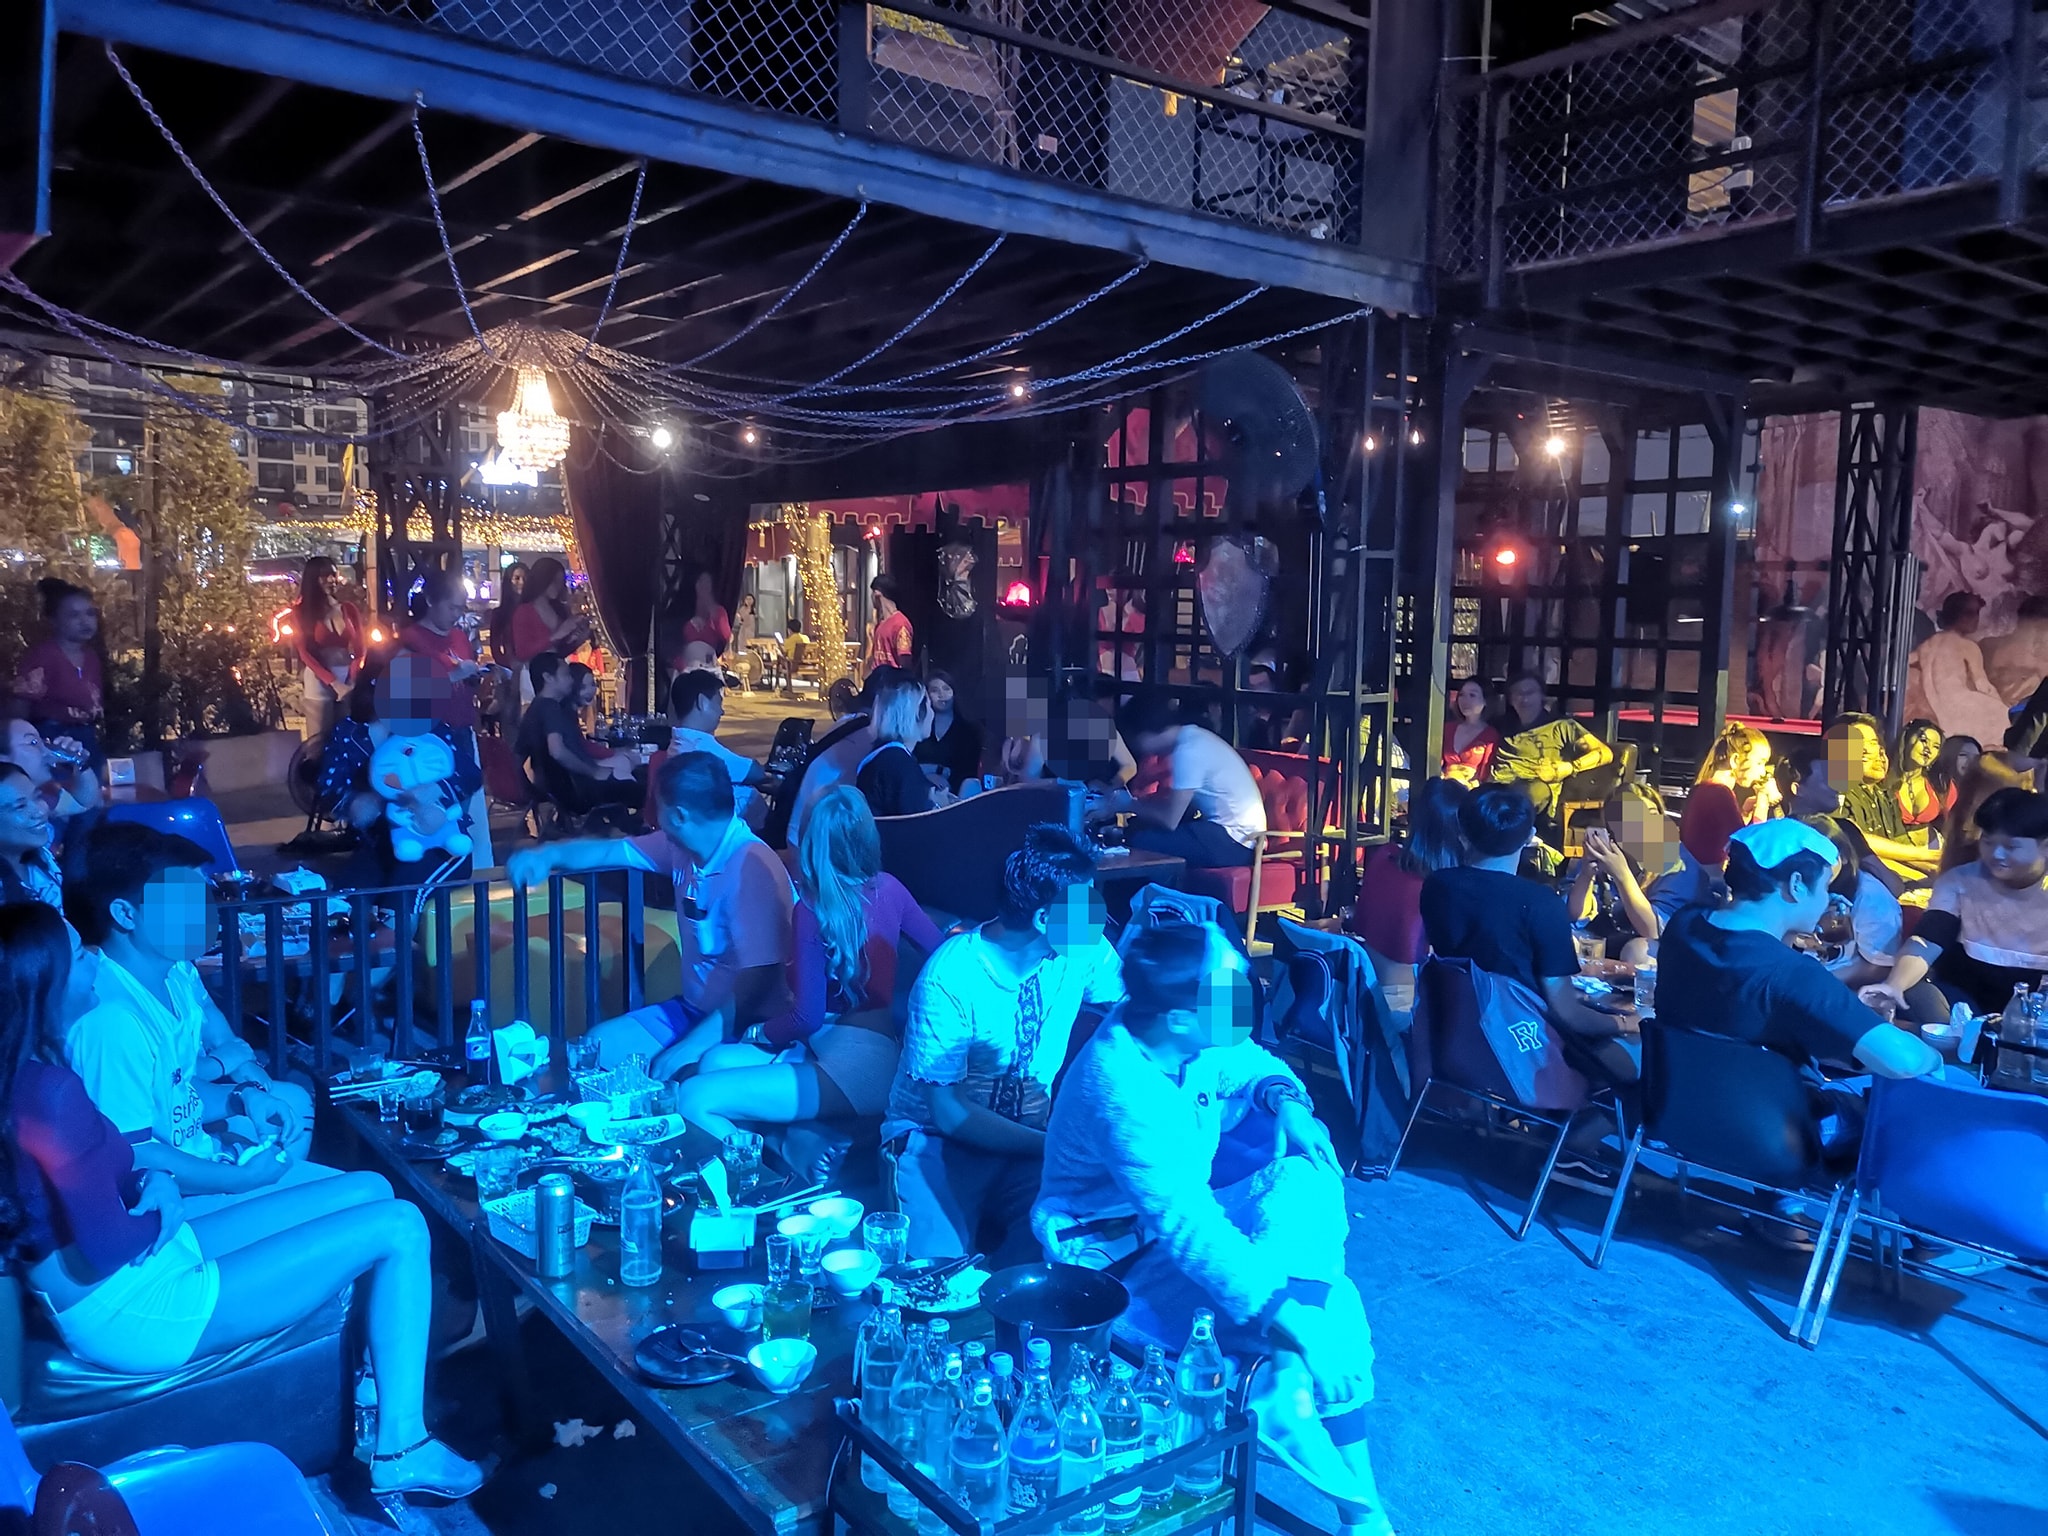 กรีนอินน์ คาเฟ่ (GreenIn Cafe) : กรุงเทพมหานคร (Bangkok)